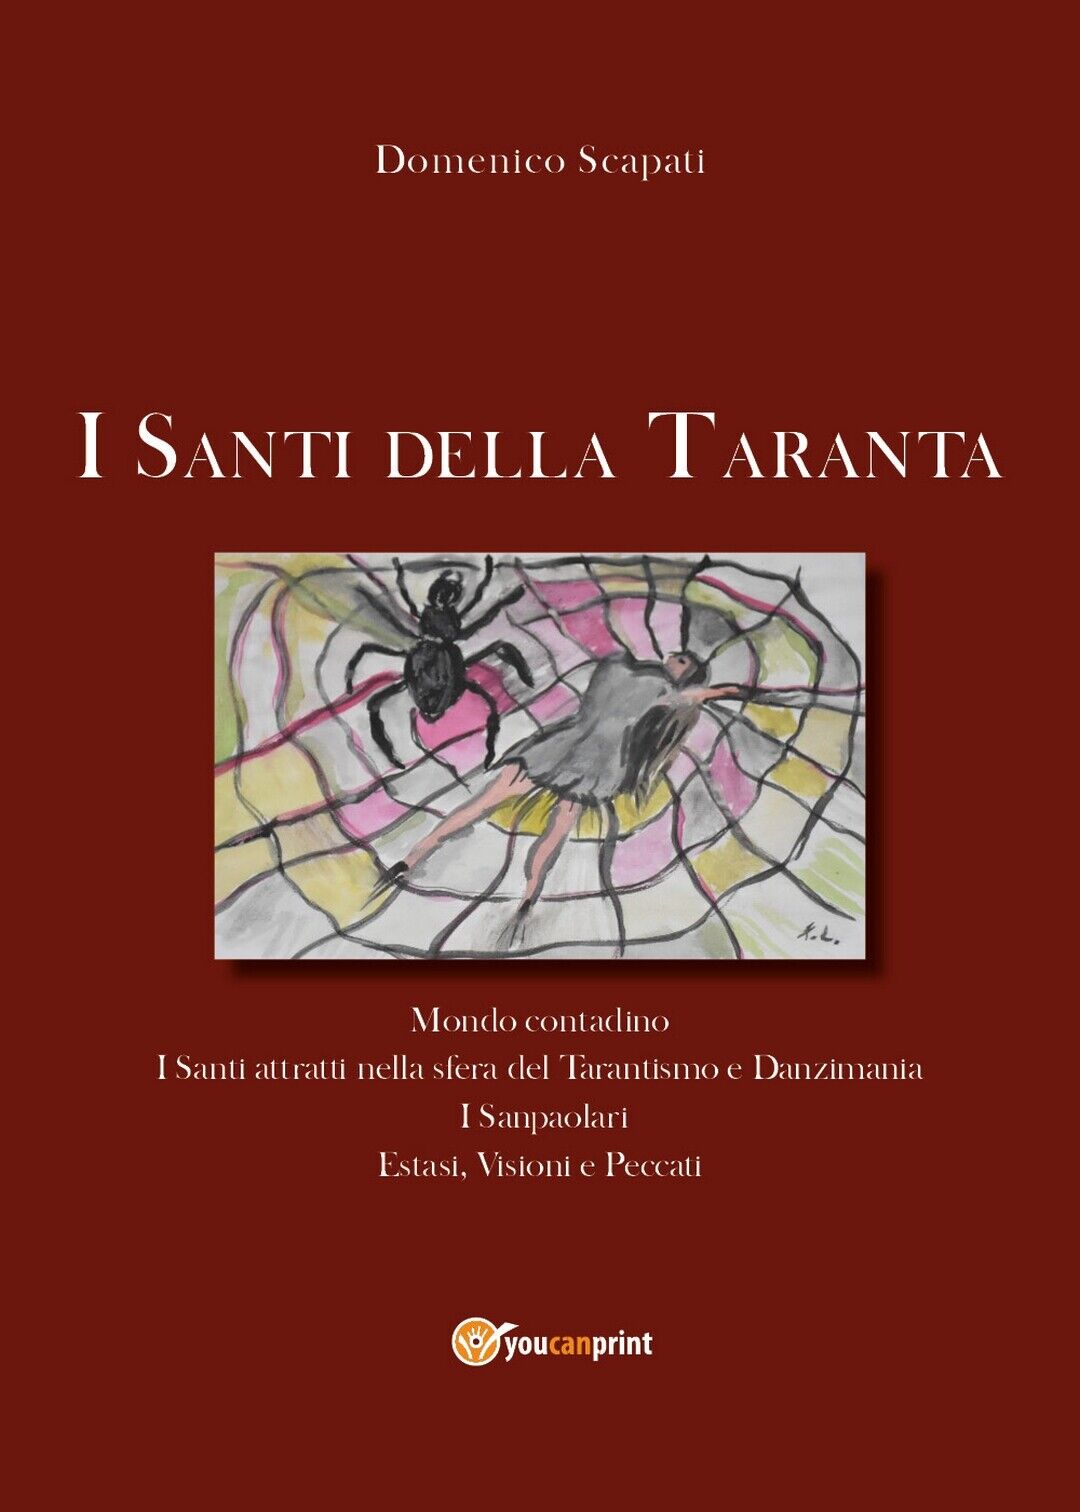 I santi della Taranta  di Domenico Scapati,  2020,  Youcanprint